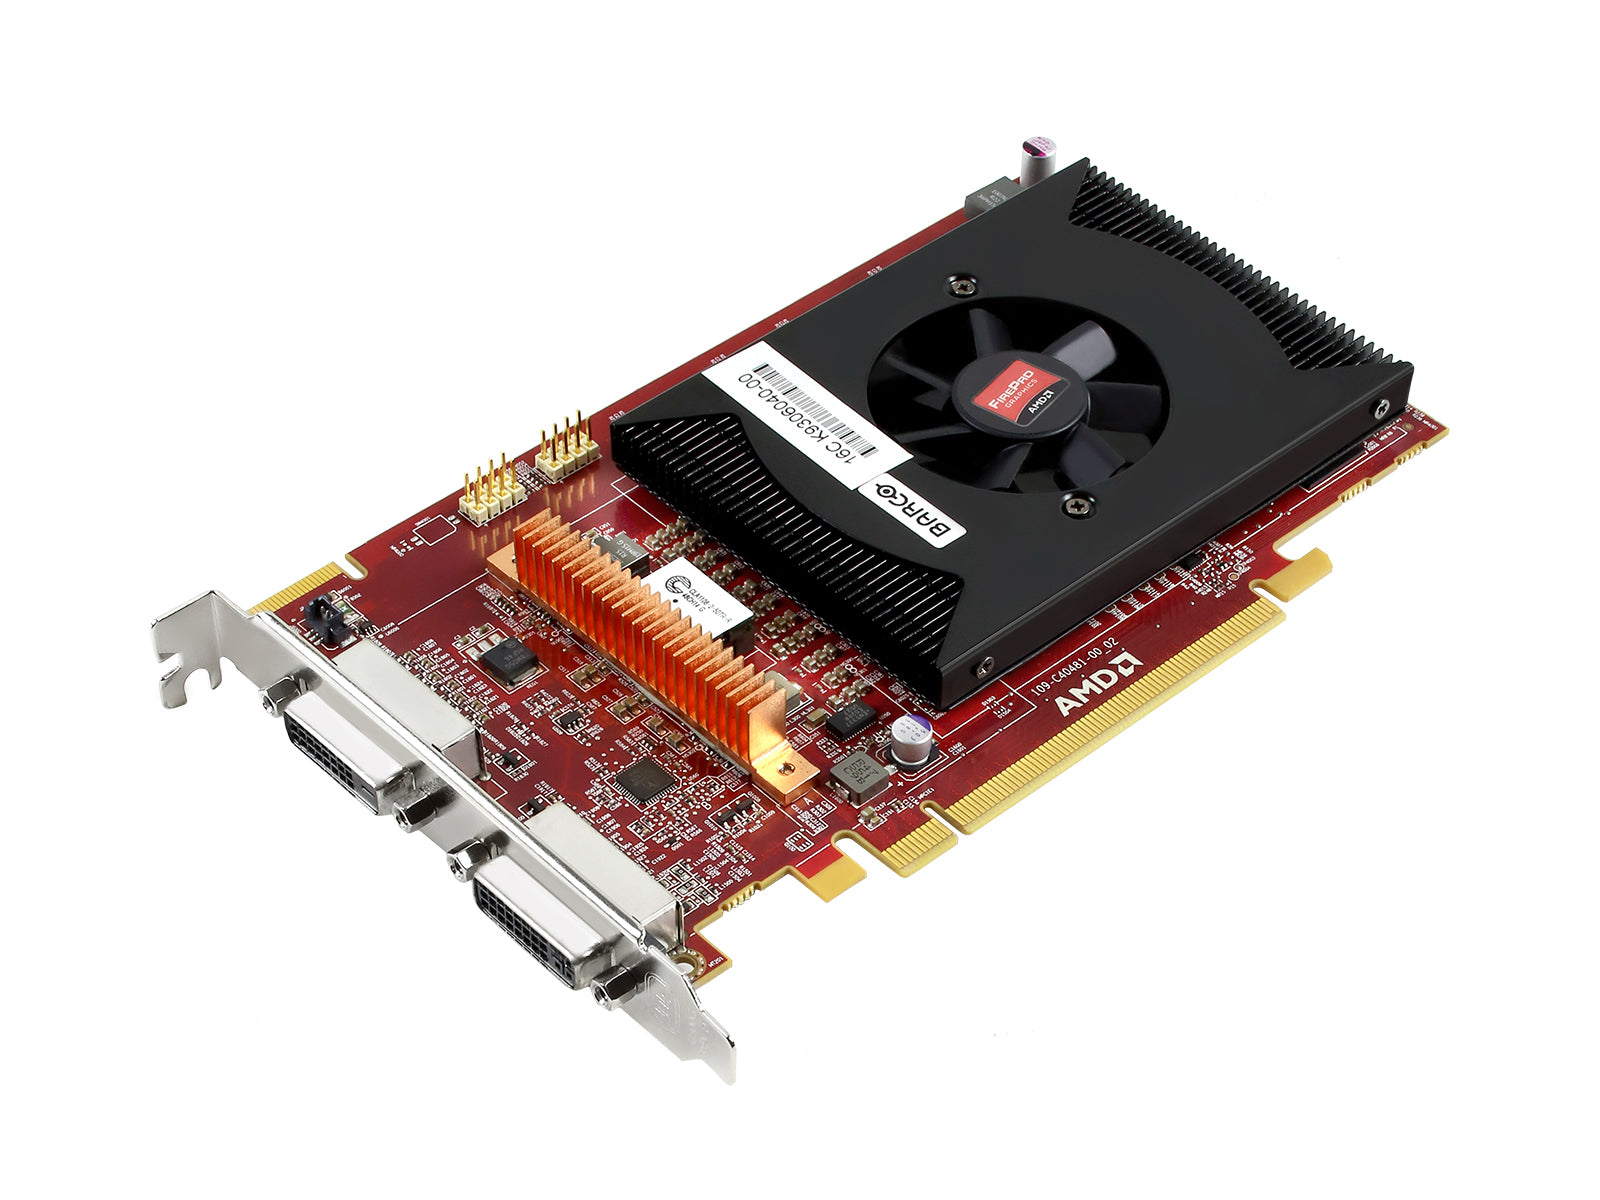 Barco MXRT-5550 Tarjeta gráfica PCIe DVI dual de 2 GB (K9306040) Monitors.com